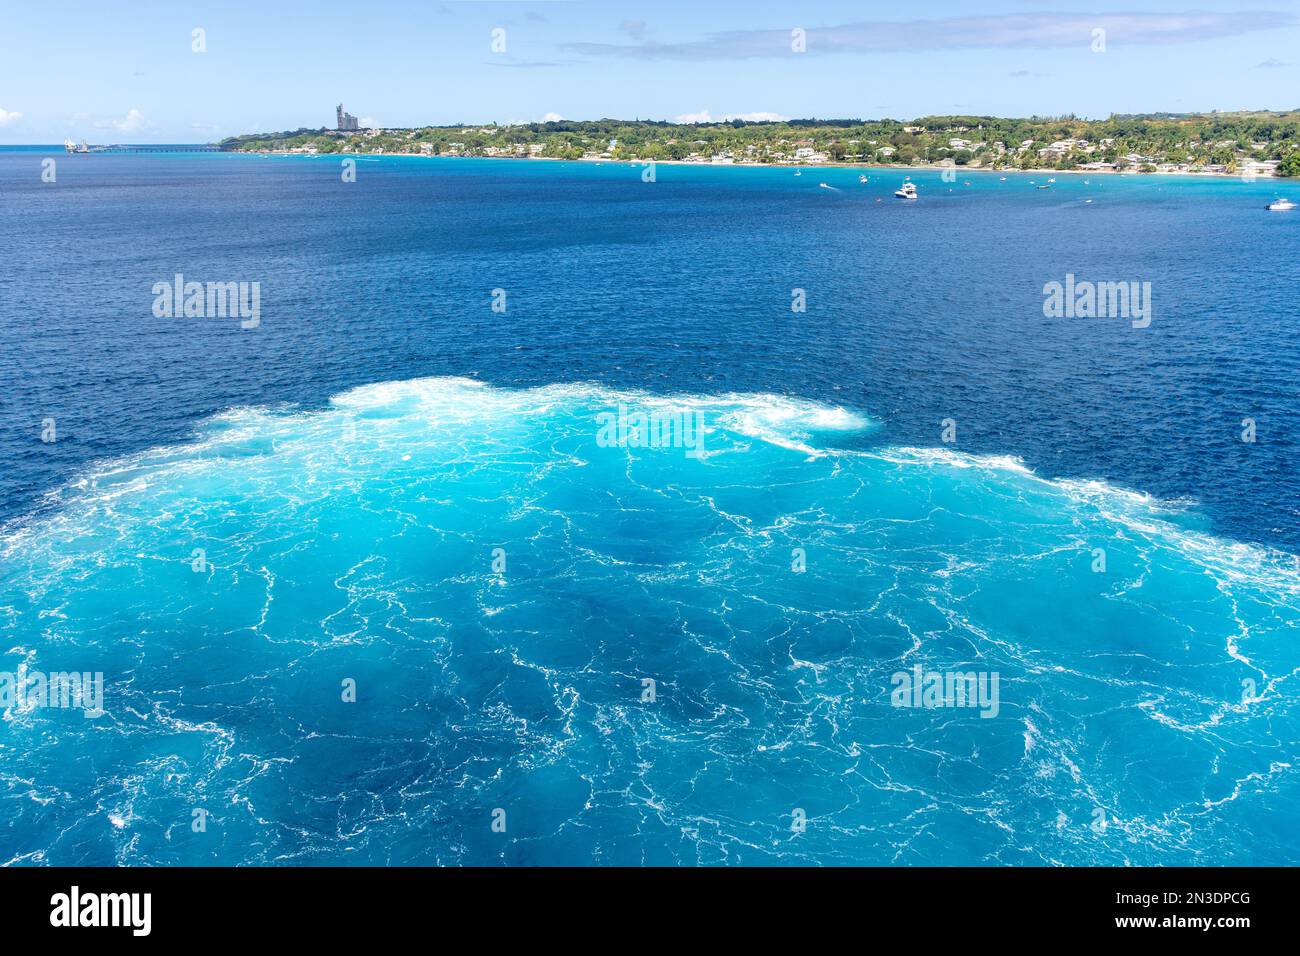 Inversion du signal de poussée du P&O Arvia Cruise Ship , Bridgetown, St Michael Parish, Barbade, Petites Antilles, Caraïbes Banque D'Images